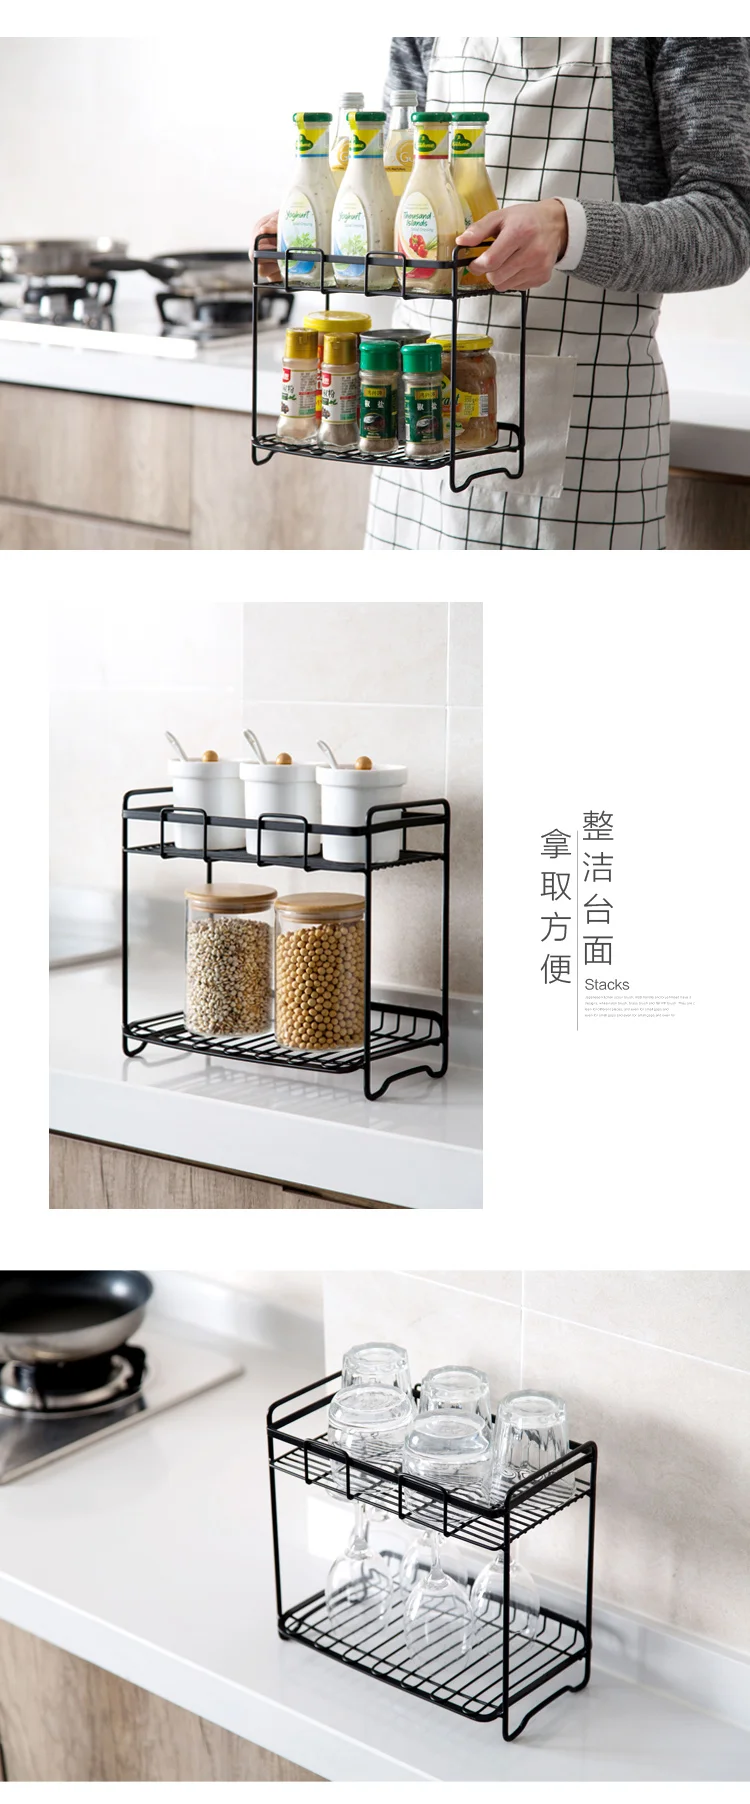 Утюг подставка для специй Приправа кухня держатель для кухонных приборов напольная стойка двойной стеллаж для хранения Lu4209